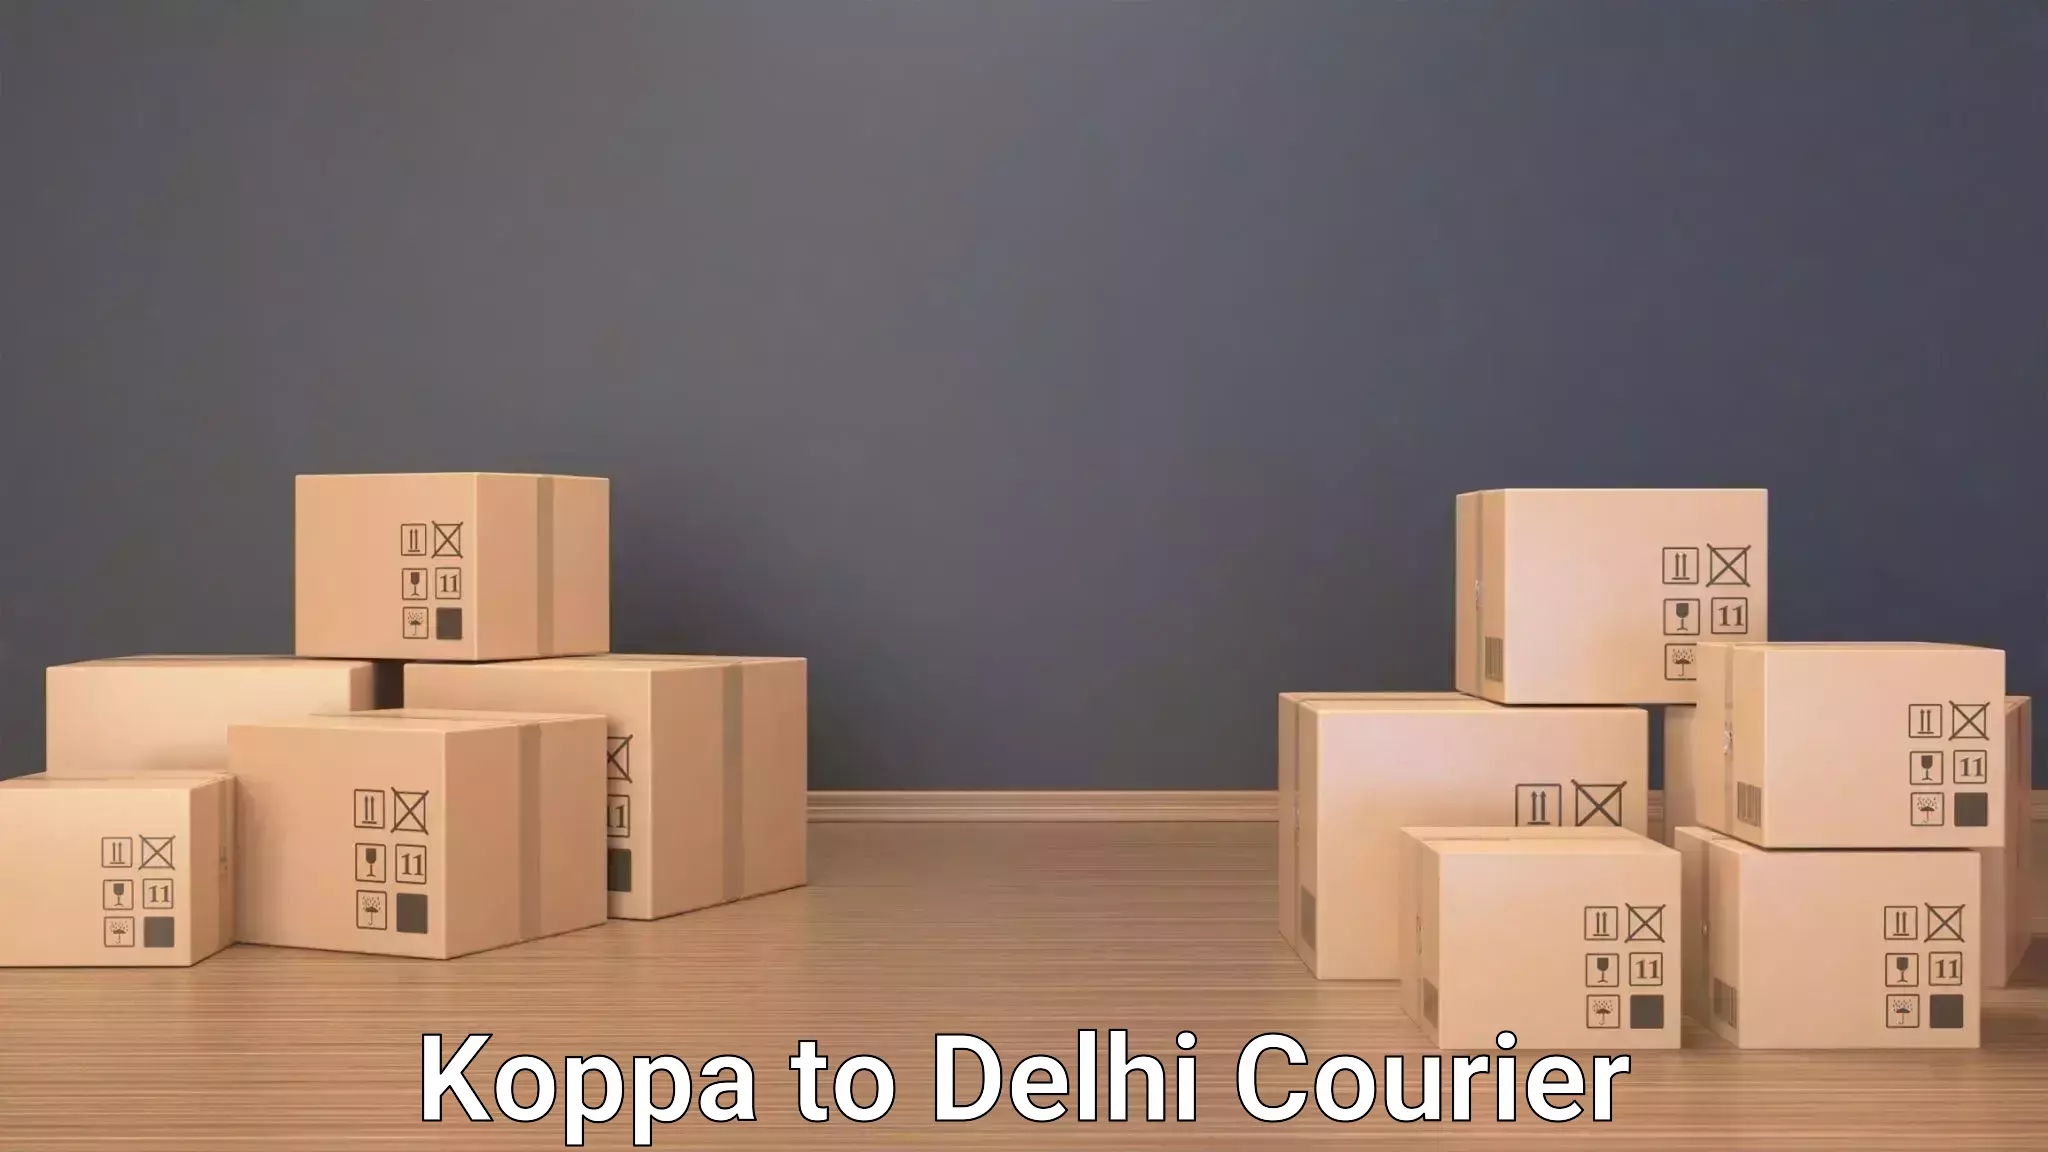 Baggage transport technology Koppa to Delhi